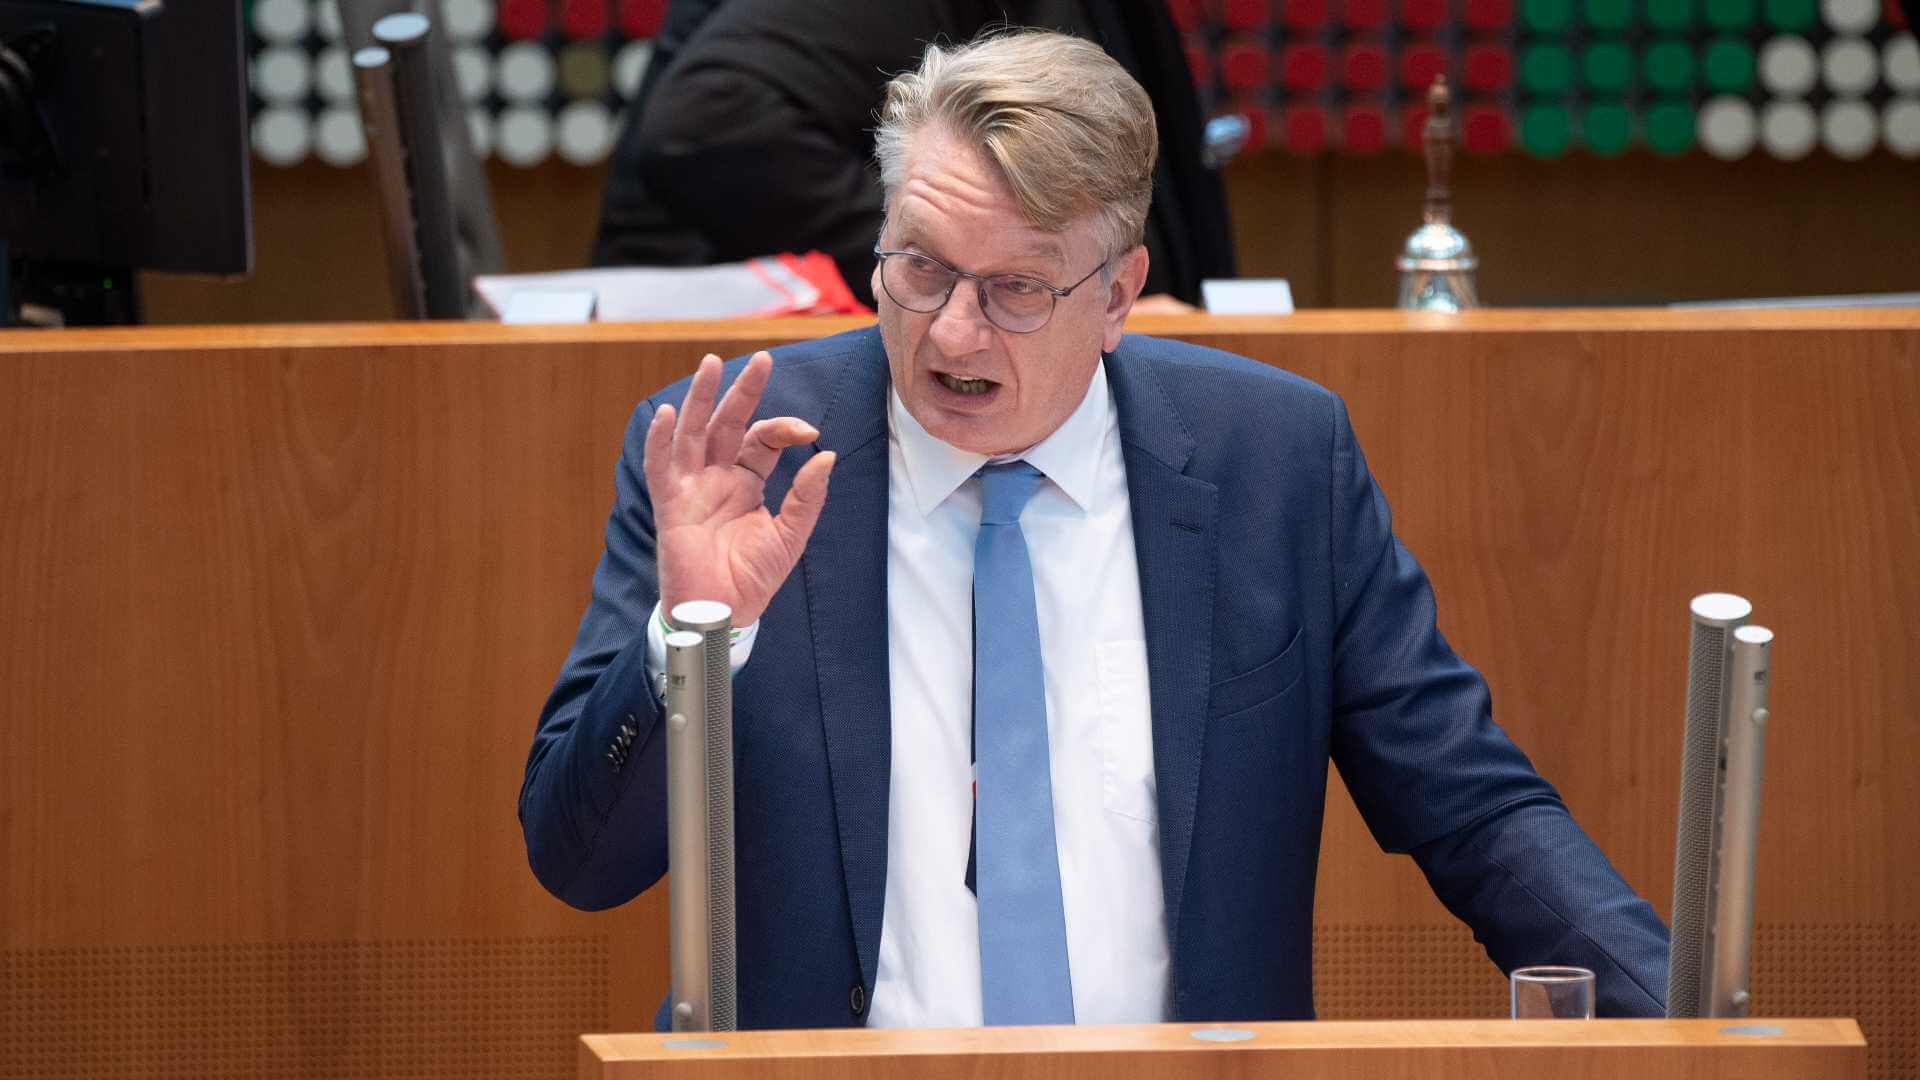 Im Netz verbreitet sich eine Rede des AfD-Politikers Markus Wagner, die er am 1. Dezember im Landtag von Nordrhein-Westfalen hielt. Fälschlicherweise wird sie im Internet dem SPD-Politiker Hartmut Ganzke zugeordnet.